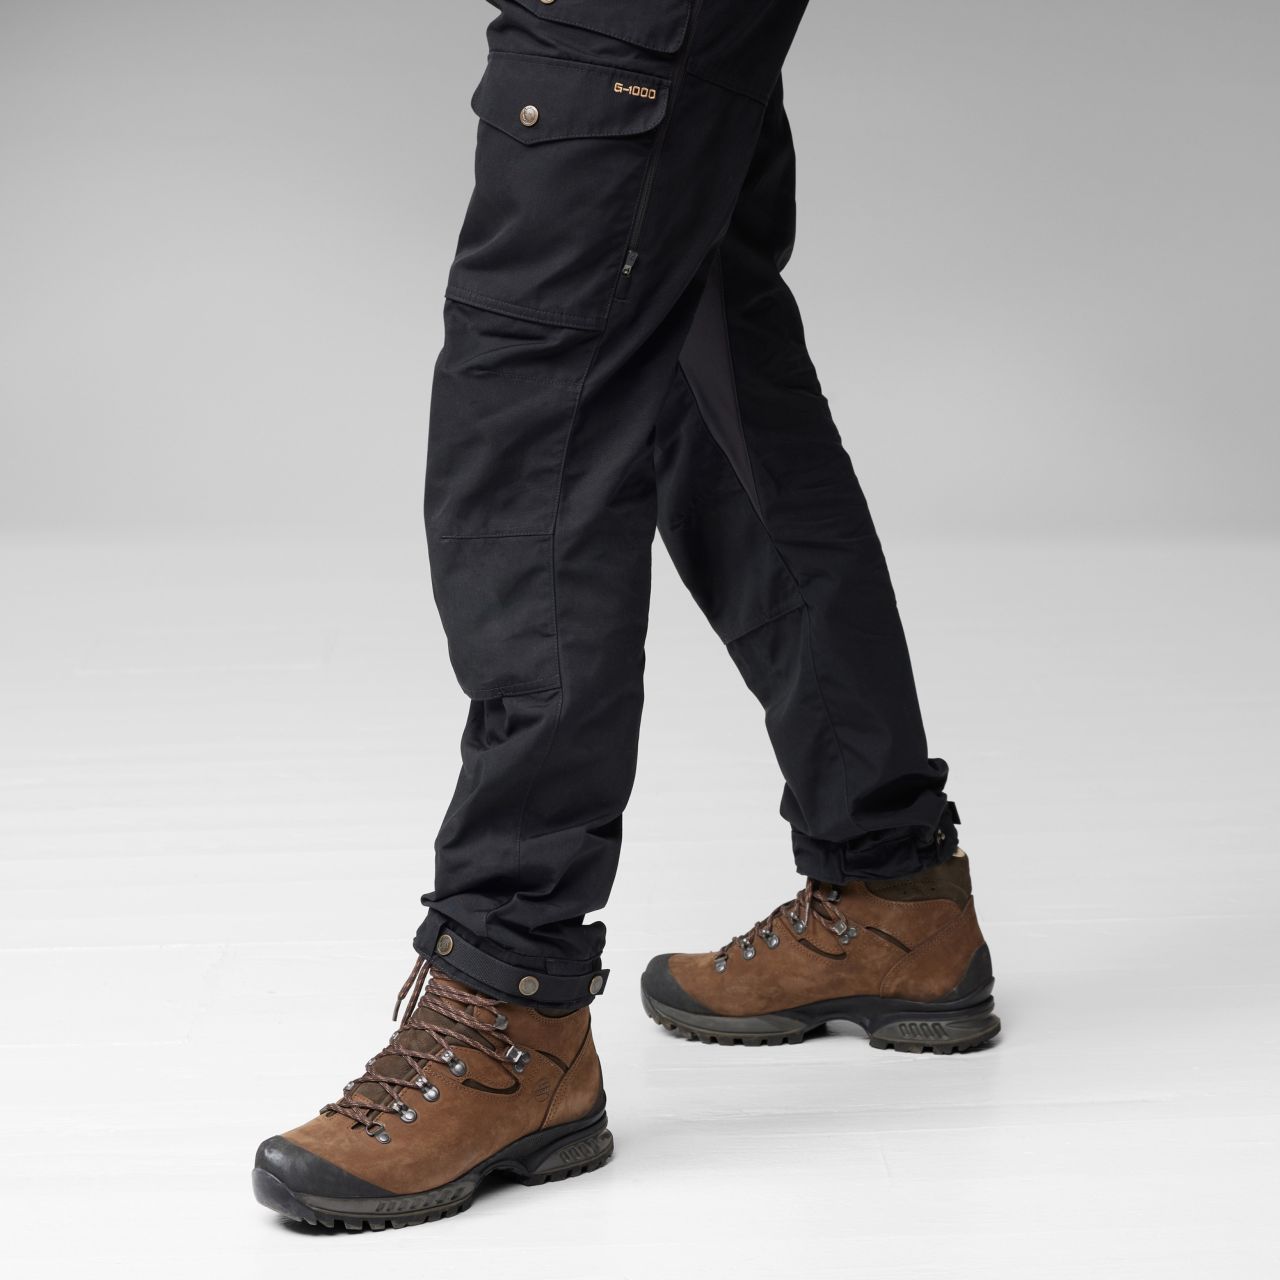 Outdoorweb.eu - Gaiter Trousers No. 2 W Sand - outdoor trousers for women -  FJÄLLRÄVEN - 290.85 € - outdoorové oblečení a vybavení shop